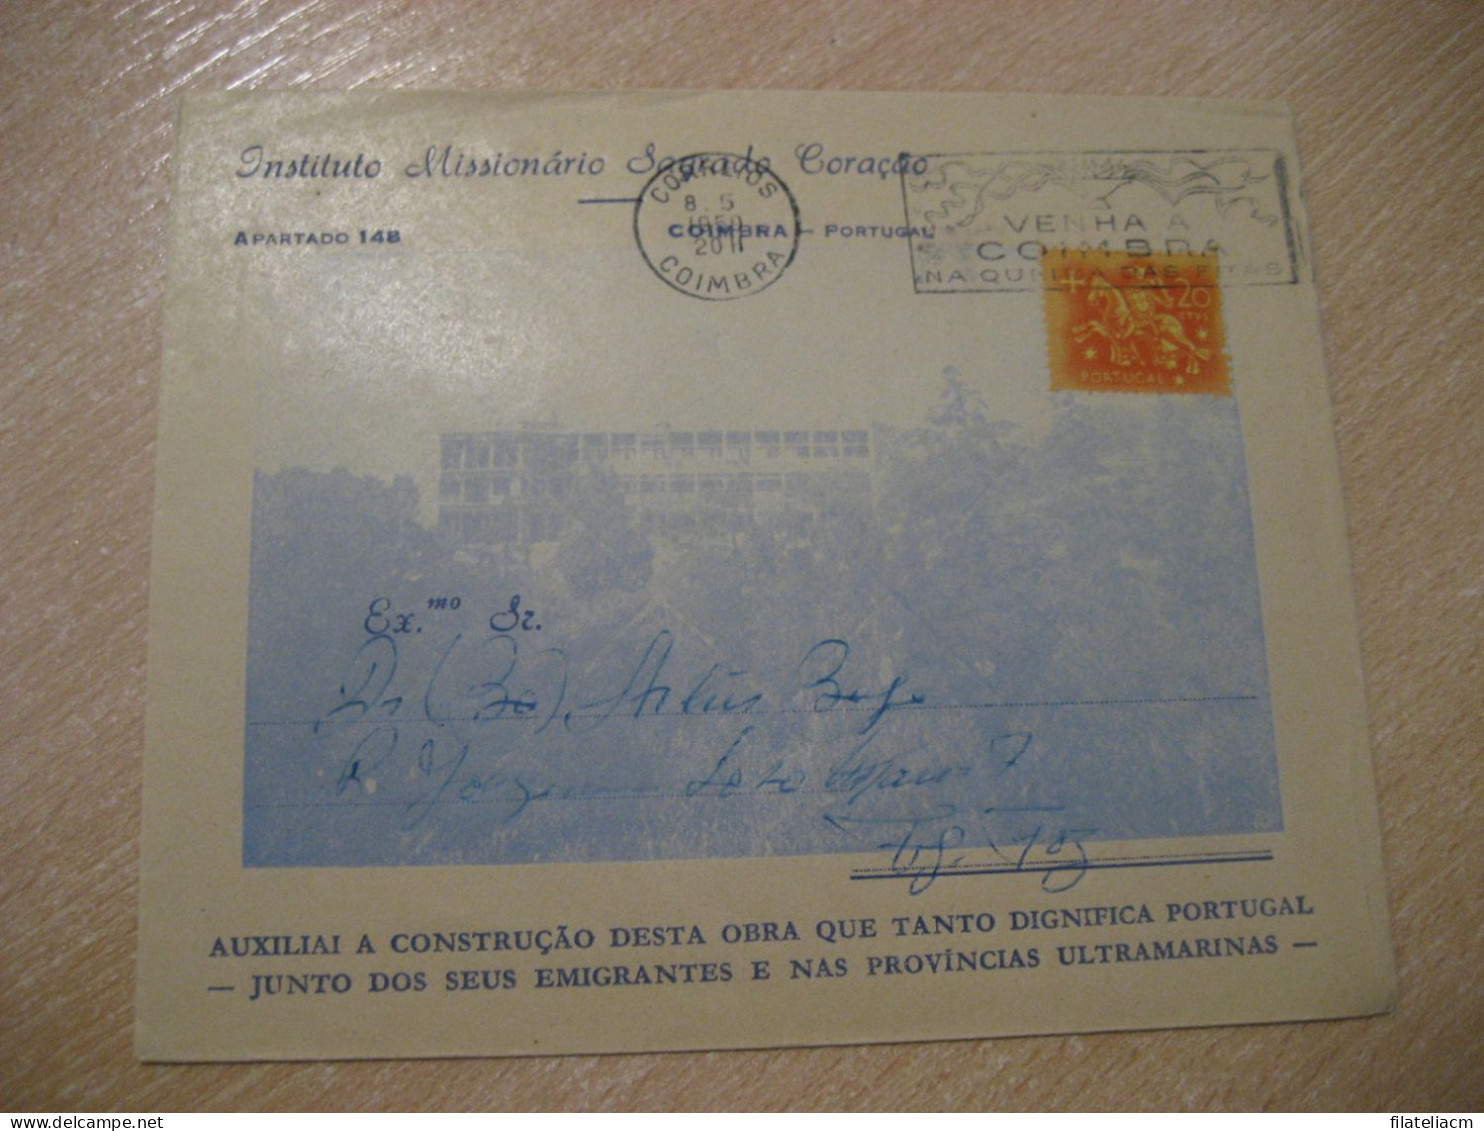 COIMBRA 1959 To Figueira Da Foz Cancel Instituto Missionario Sagrado Coraçao Cover PORTUGAL - Lettres & Documents